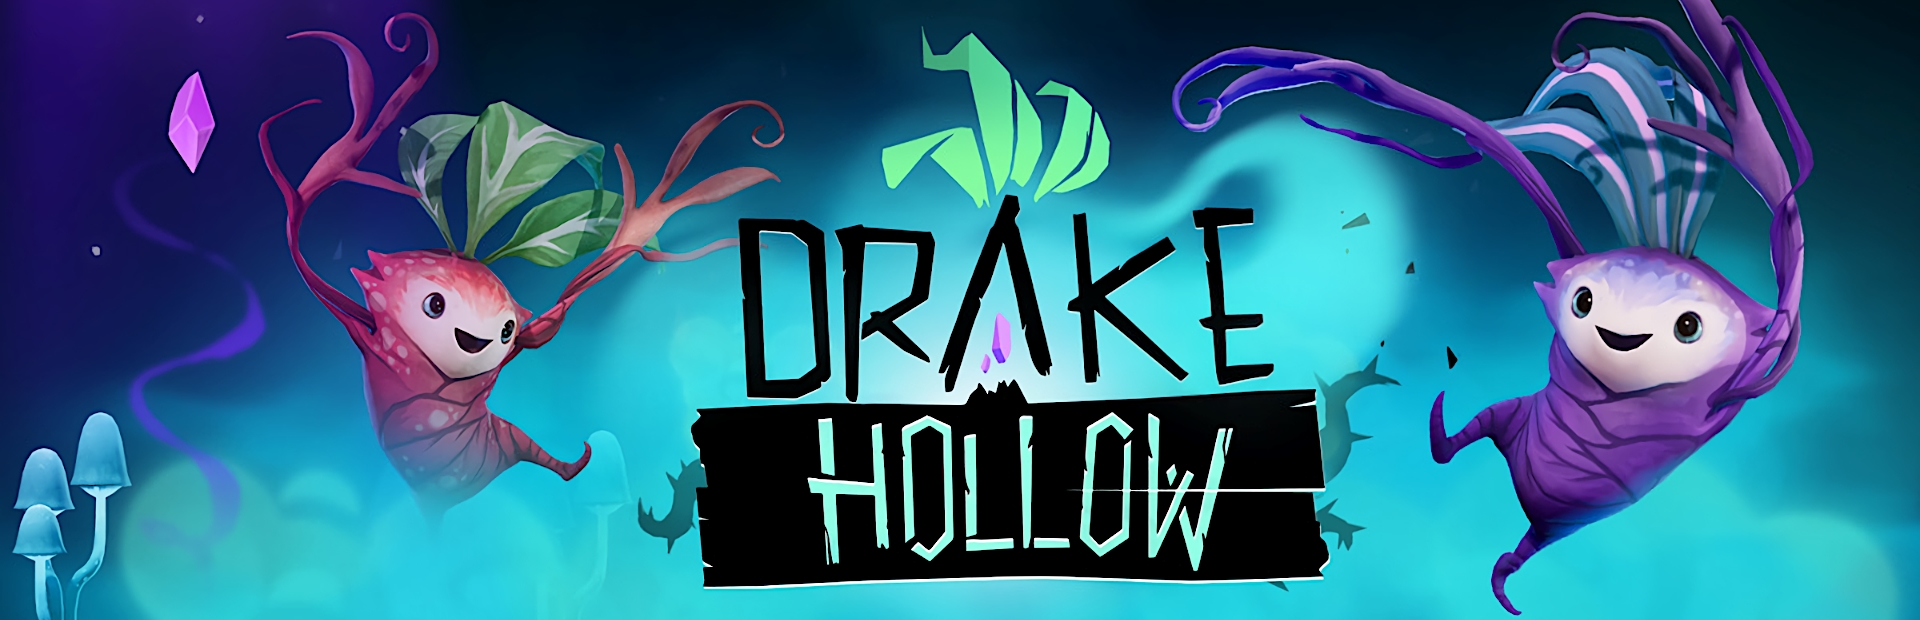 دانلود بازی Drake Hollow برای PC | گیمباتو